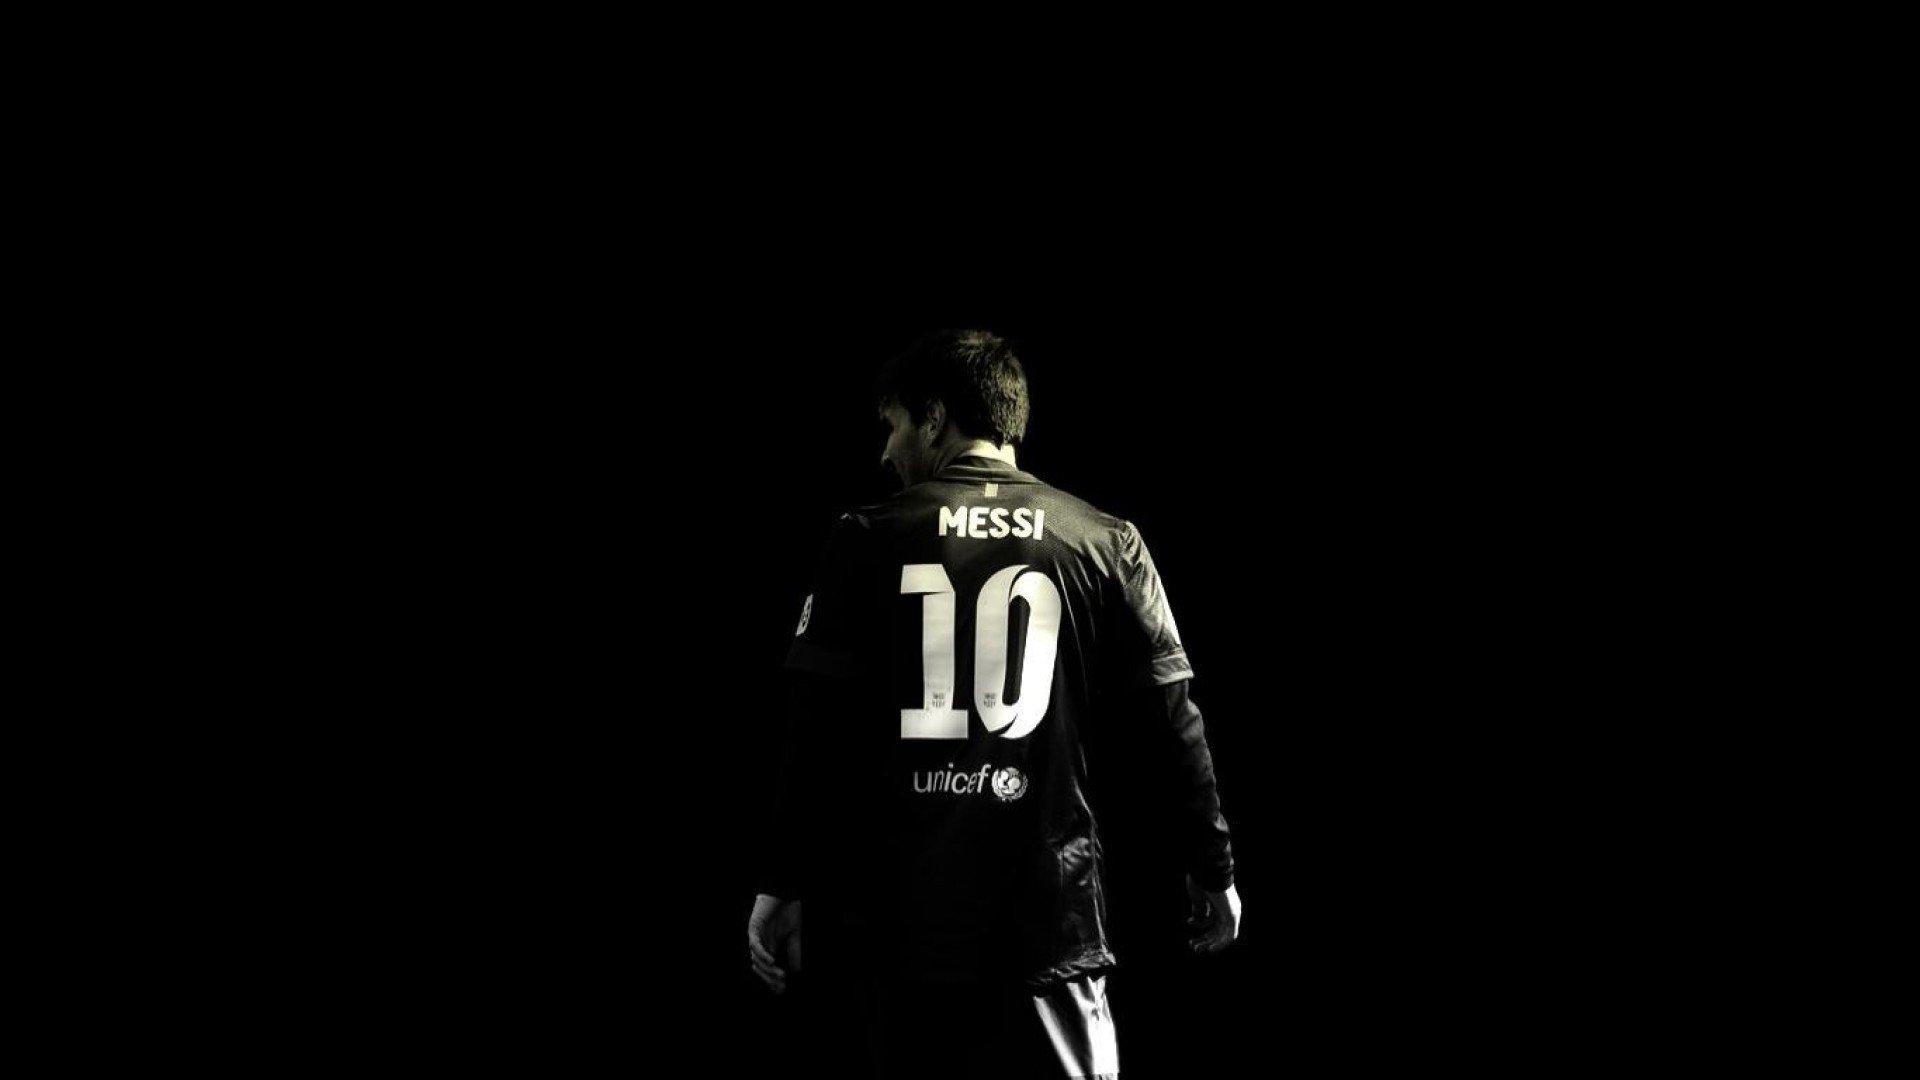 Với những ai đam mê Messi, các bức ảnh nền đen đầy uy lực với hình ảnh siêu sao bóng đá này sẽ nhanh chóng thu hút sự chú ý của bạn. Các hình nền này không chỉ mang lại sự sang trọng cho điện thoại của bạn mà còn thể hiện sức mạnh, tinh thần chiến đấu của Messi trên sân cỏ!